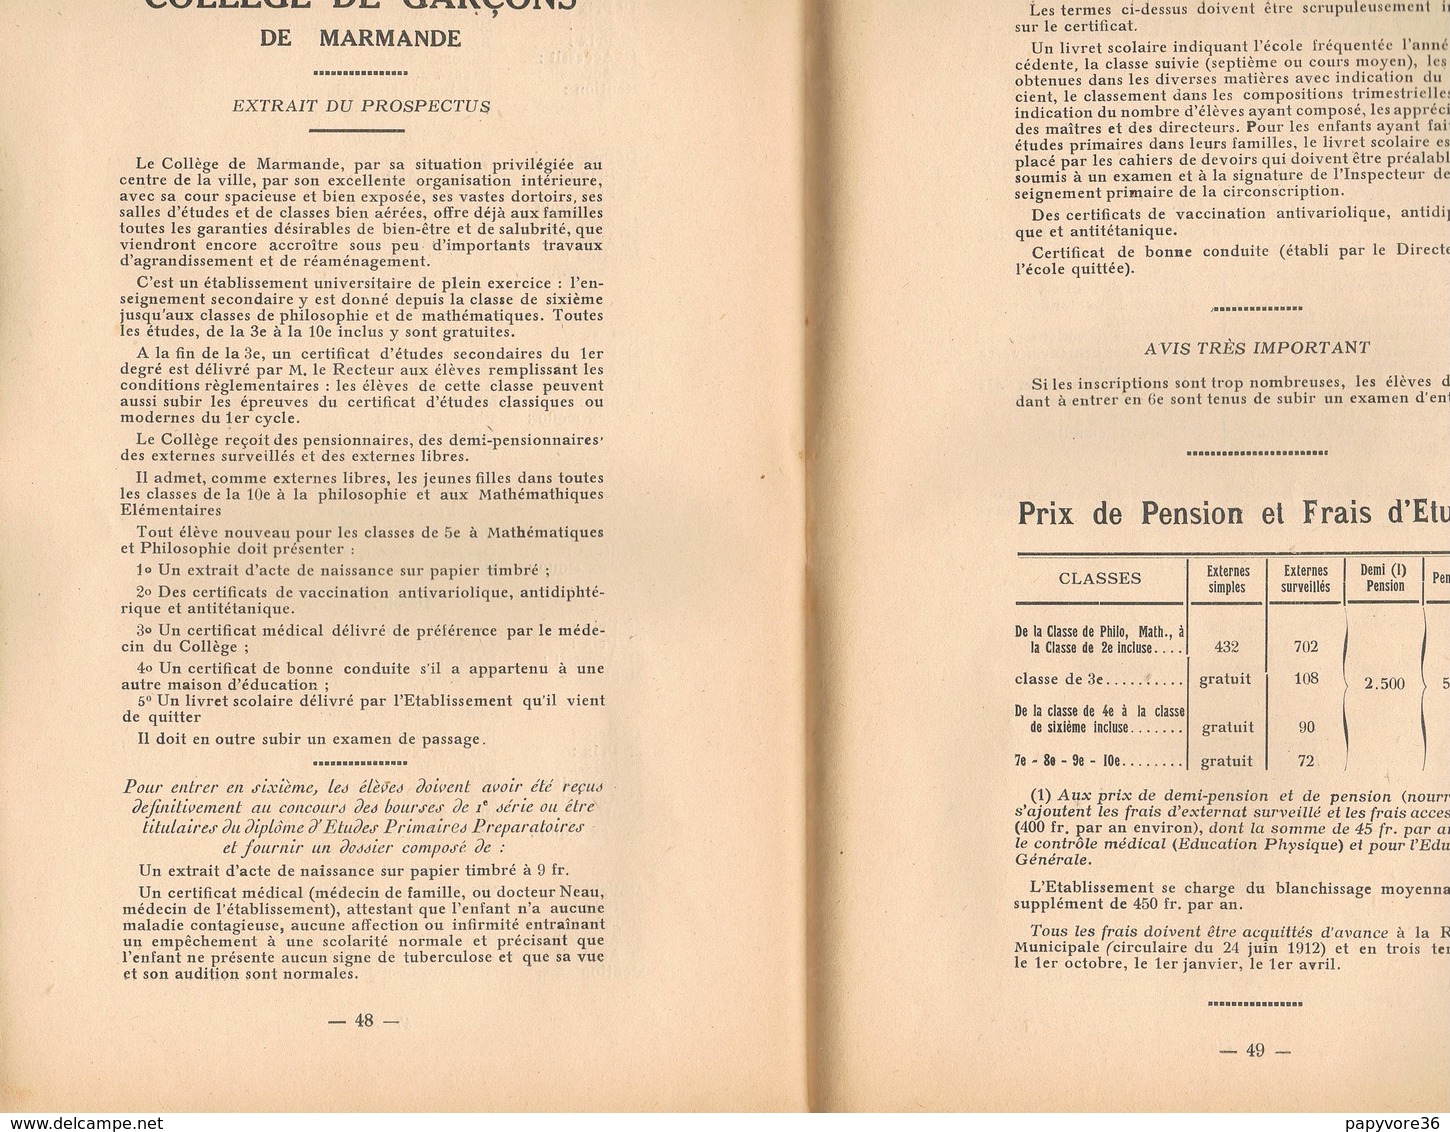 PALMARES Du Collège Et De L'Ecole Pratique D'Industrie De MARMANDE - Année Scolaire 1941-1942 - Diploma & School Reports